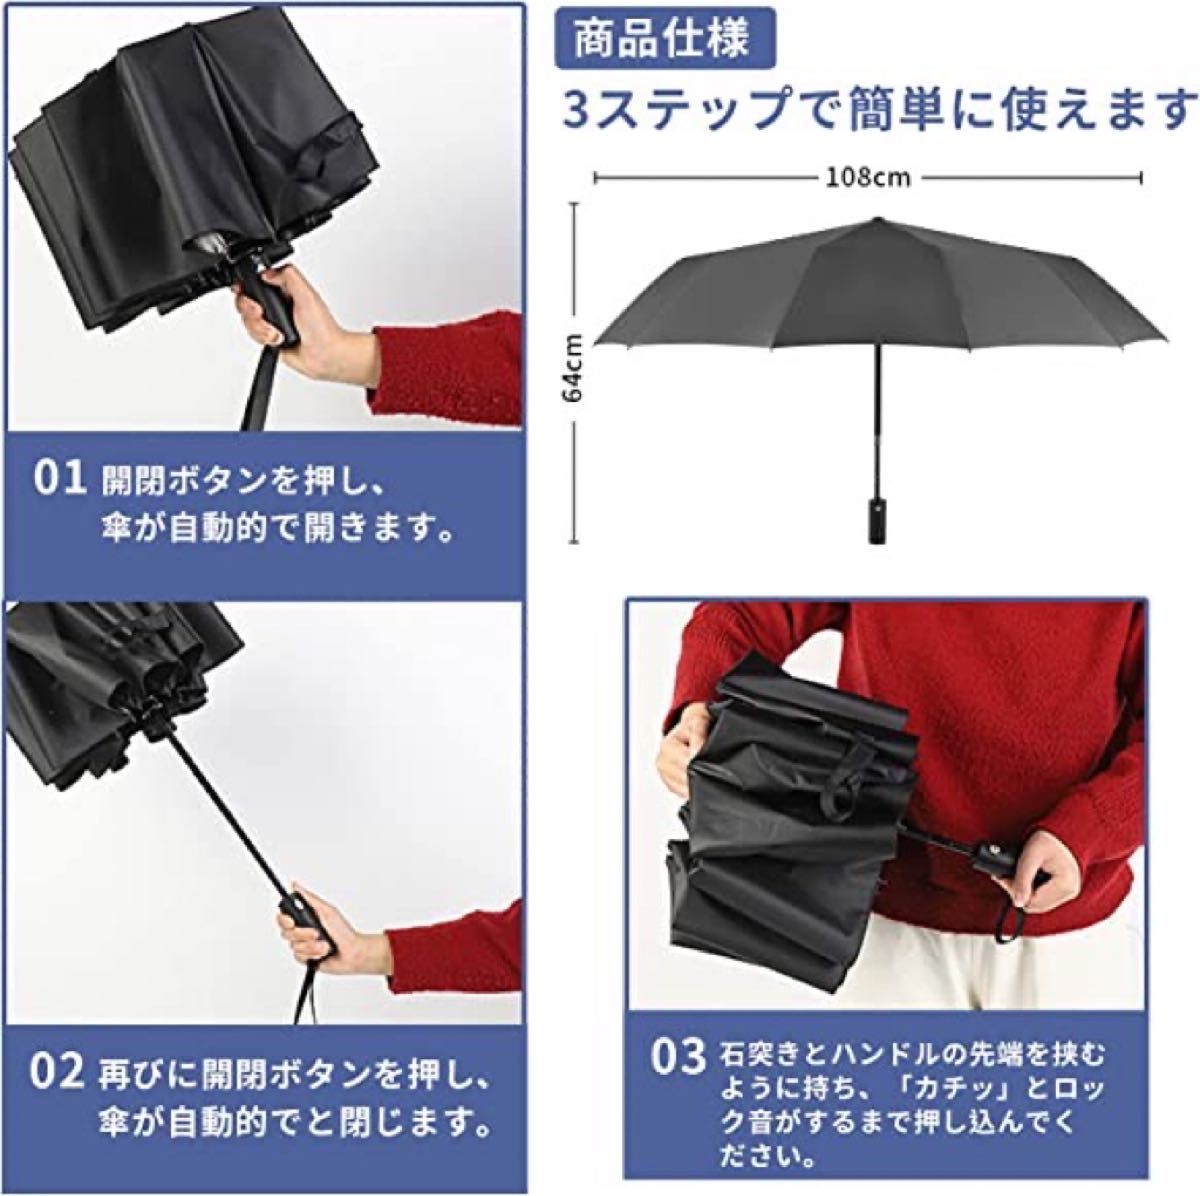 折りたたみ傘 ワンタッチ 折り畳み傘 自動開閉 メンズ 大きい おりたたみ傘 台風対応 梅雨対策 耐強風 超撥水 晴雨兼用